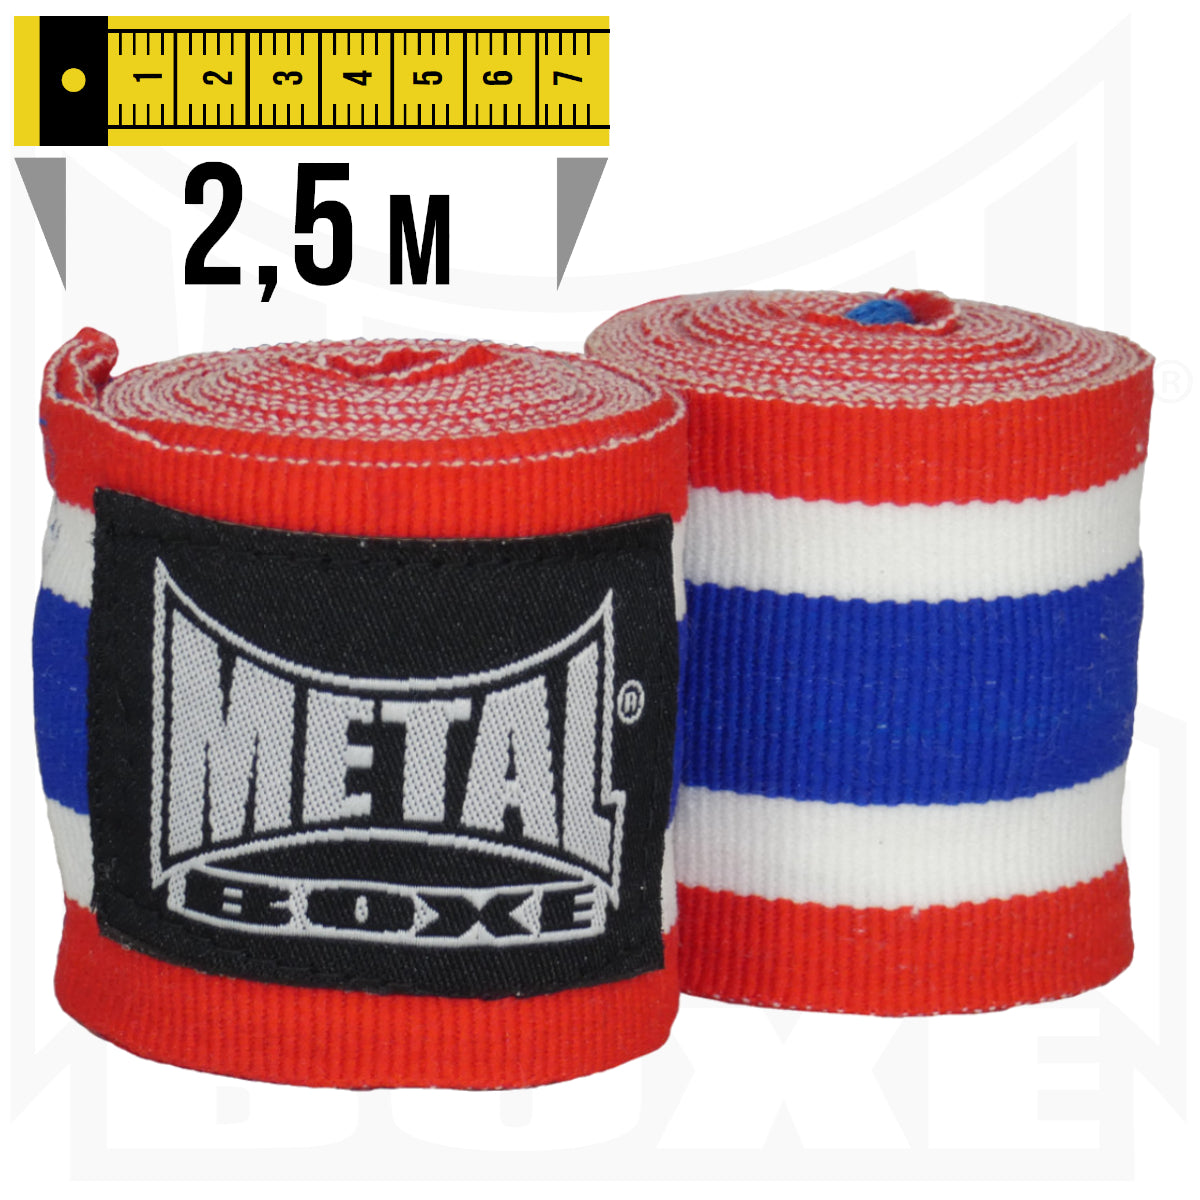 Bandages de Boxe Metal Boxe – France – 2,5 m